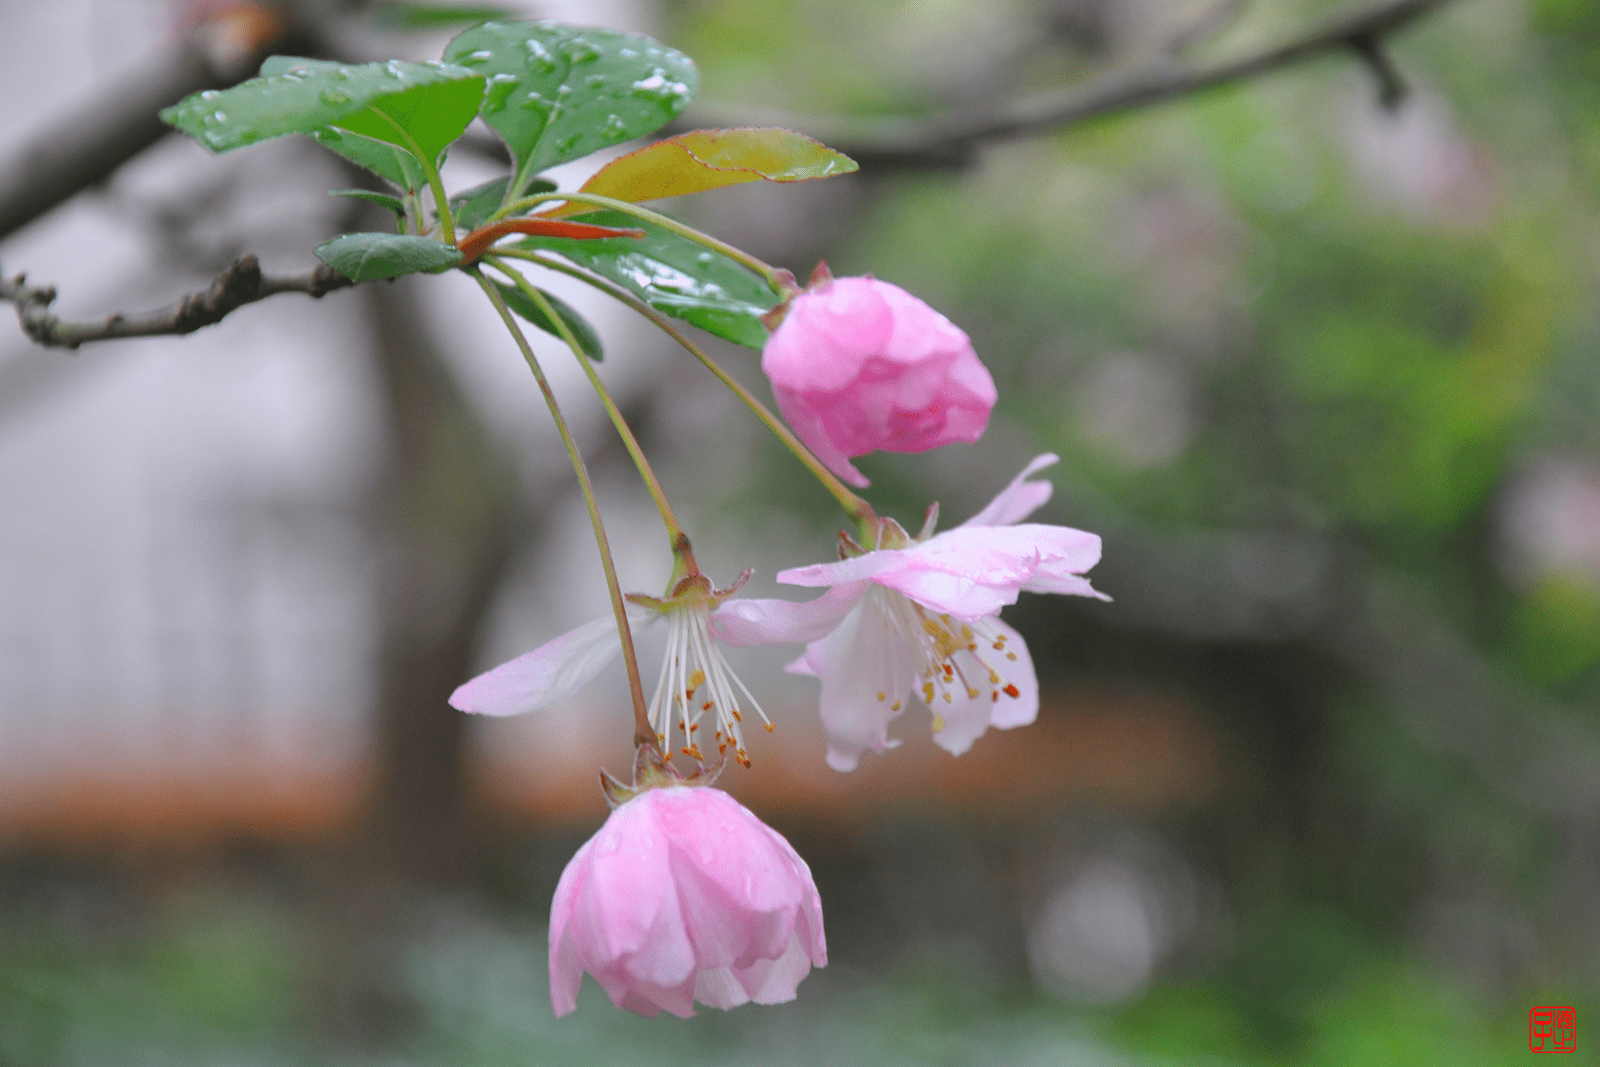 又见雨滴下的初春海棠